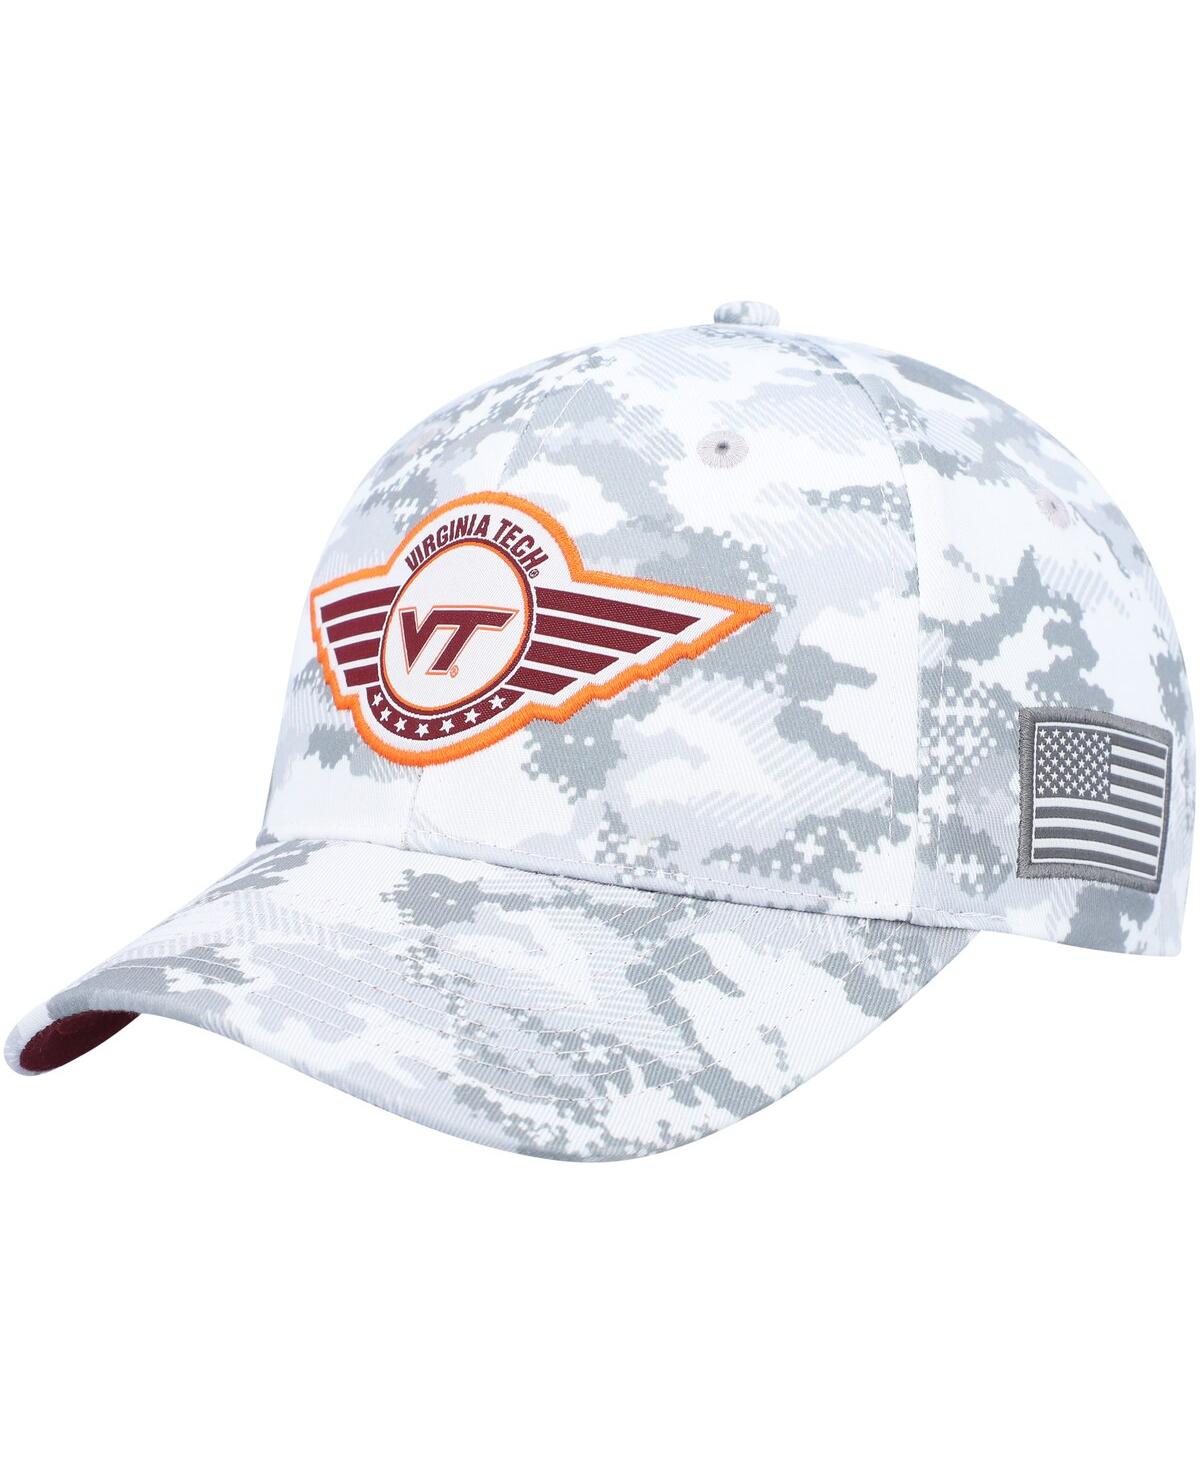 Men's Colosseum Camo Virginia Tech Hokies Oht Military-Inspired Appreciation Snapback Hat - Camo